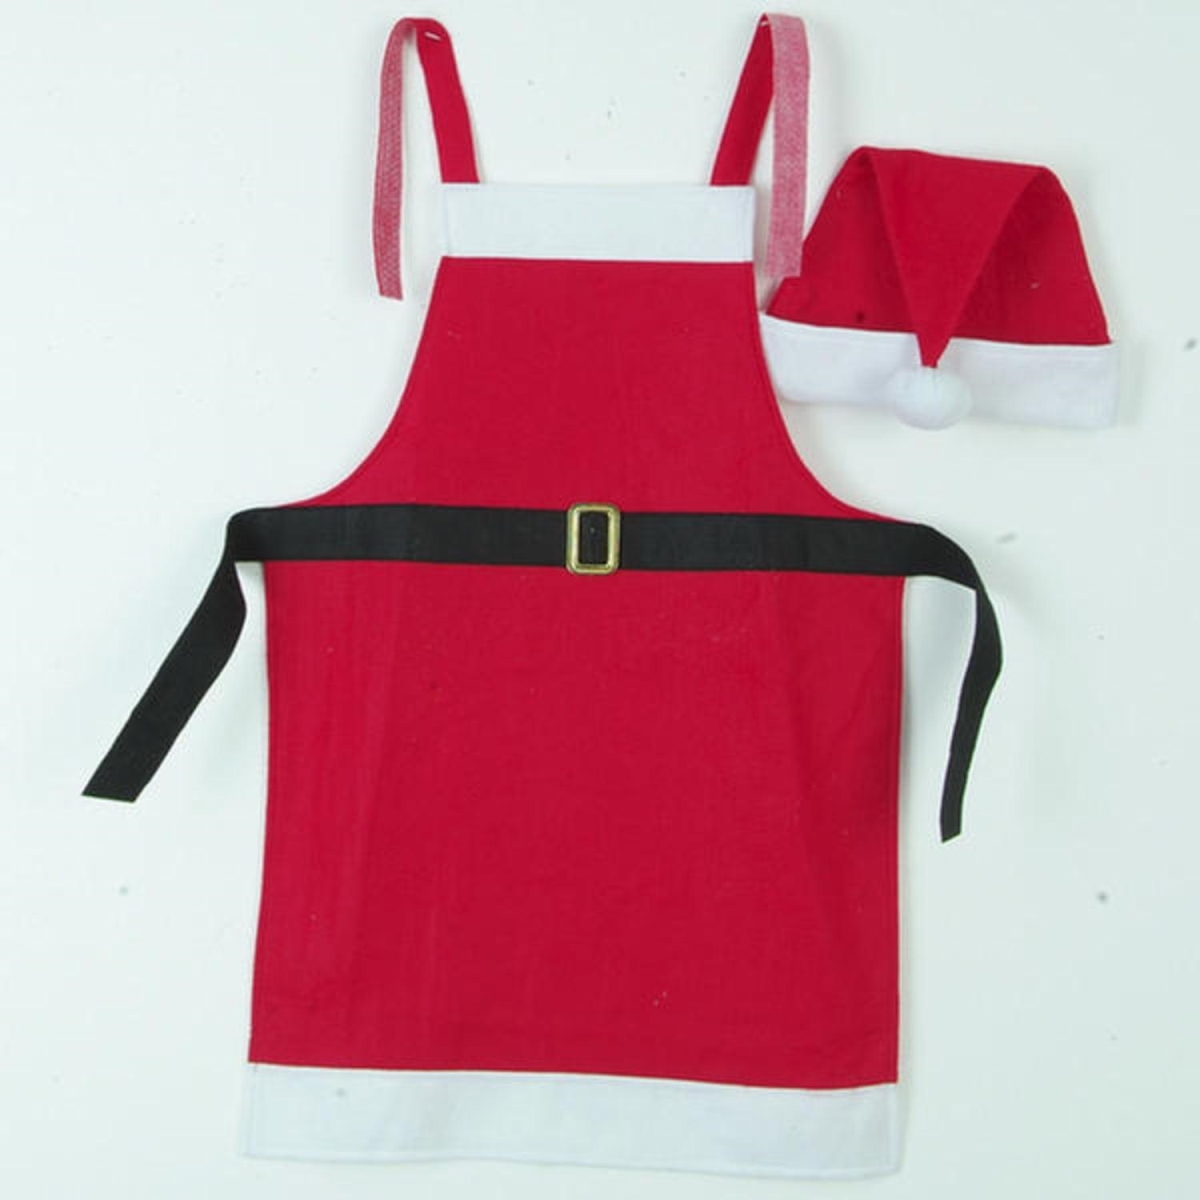 11233842 Festive Red & White Christmas Apron & Santa Claus Hat 2 Piece Set - Adult Size